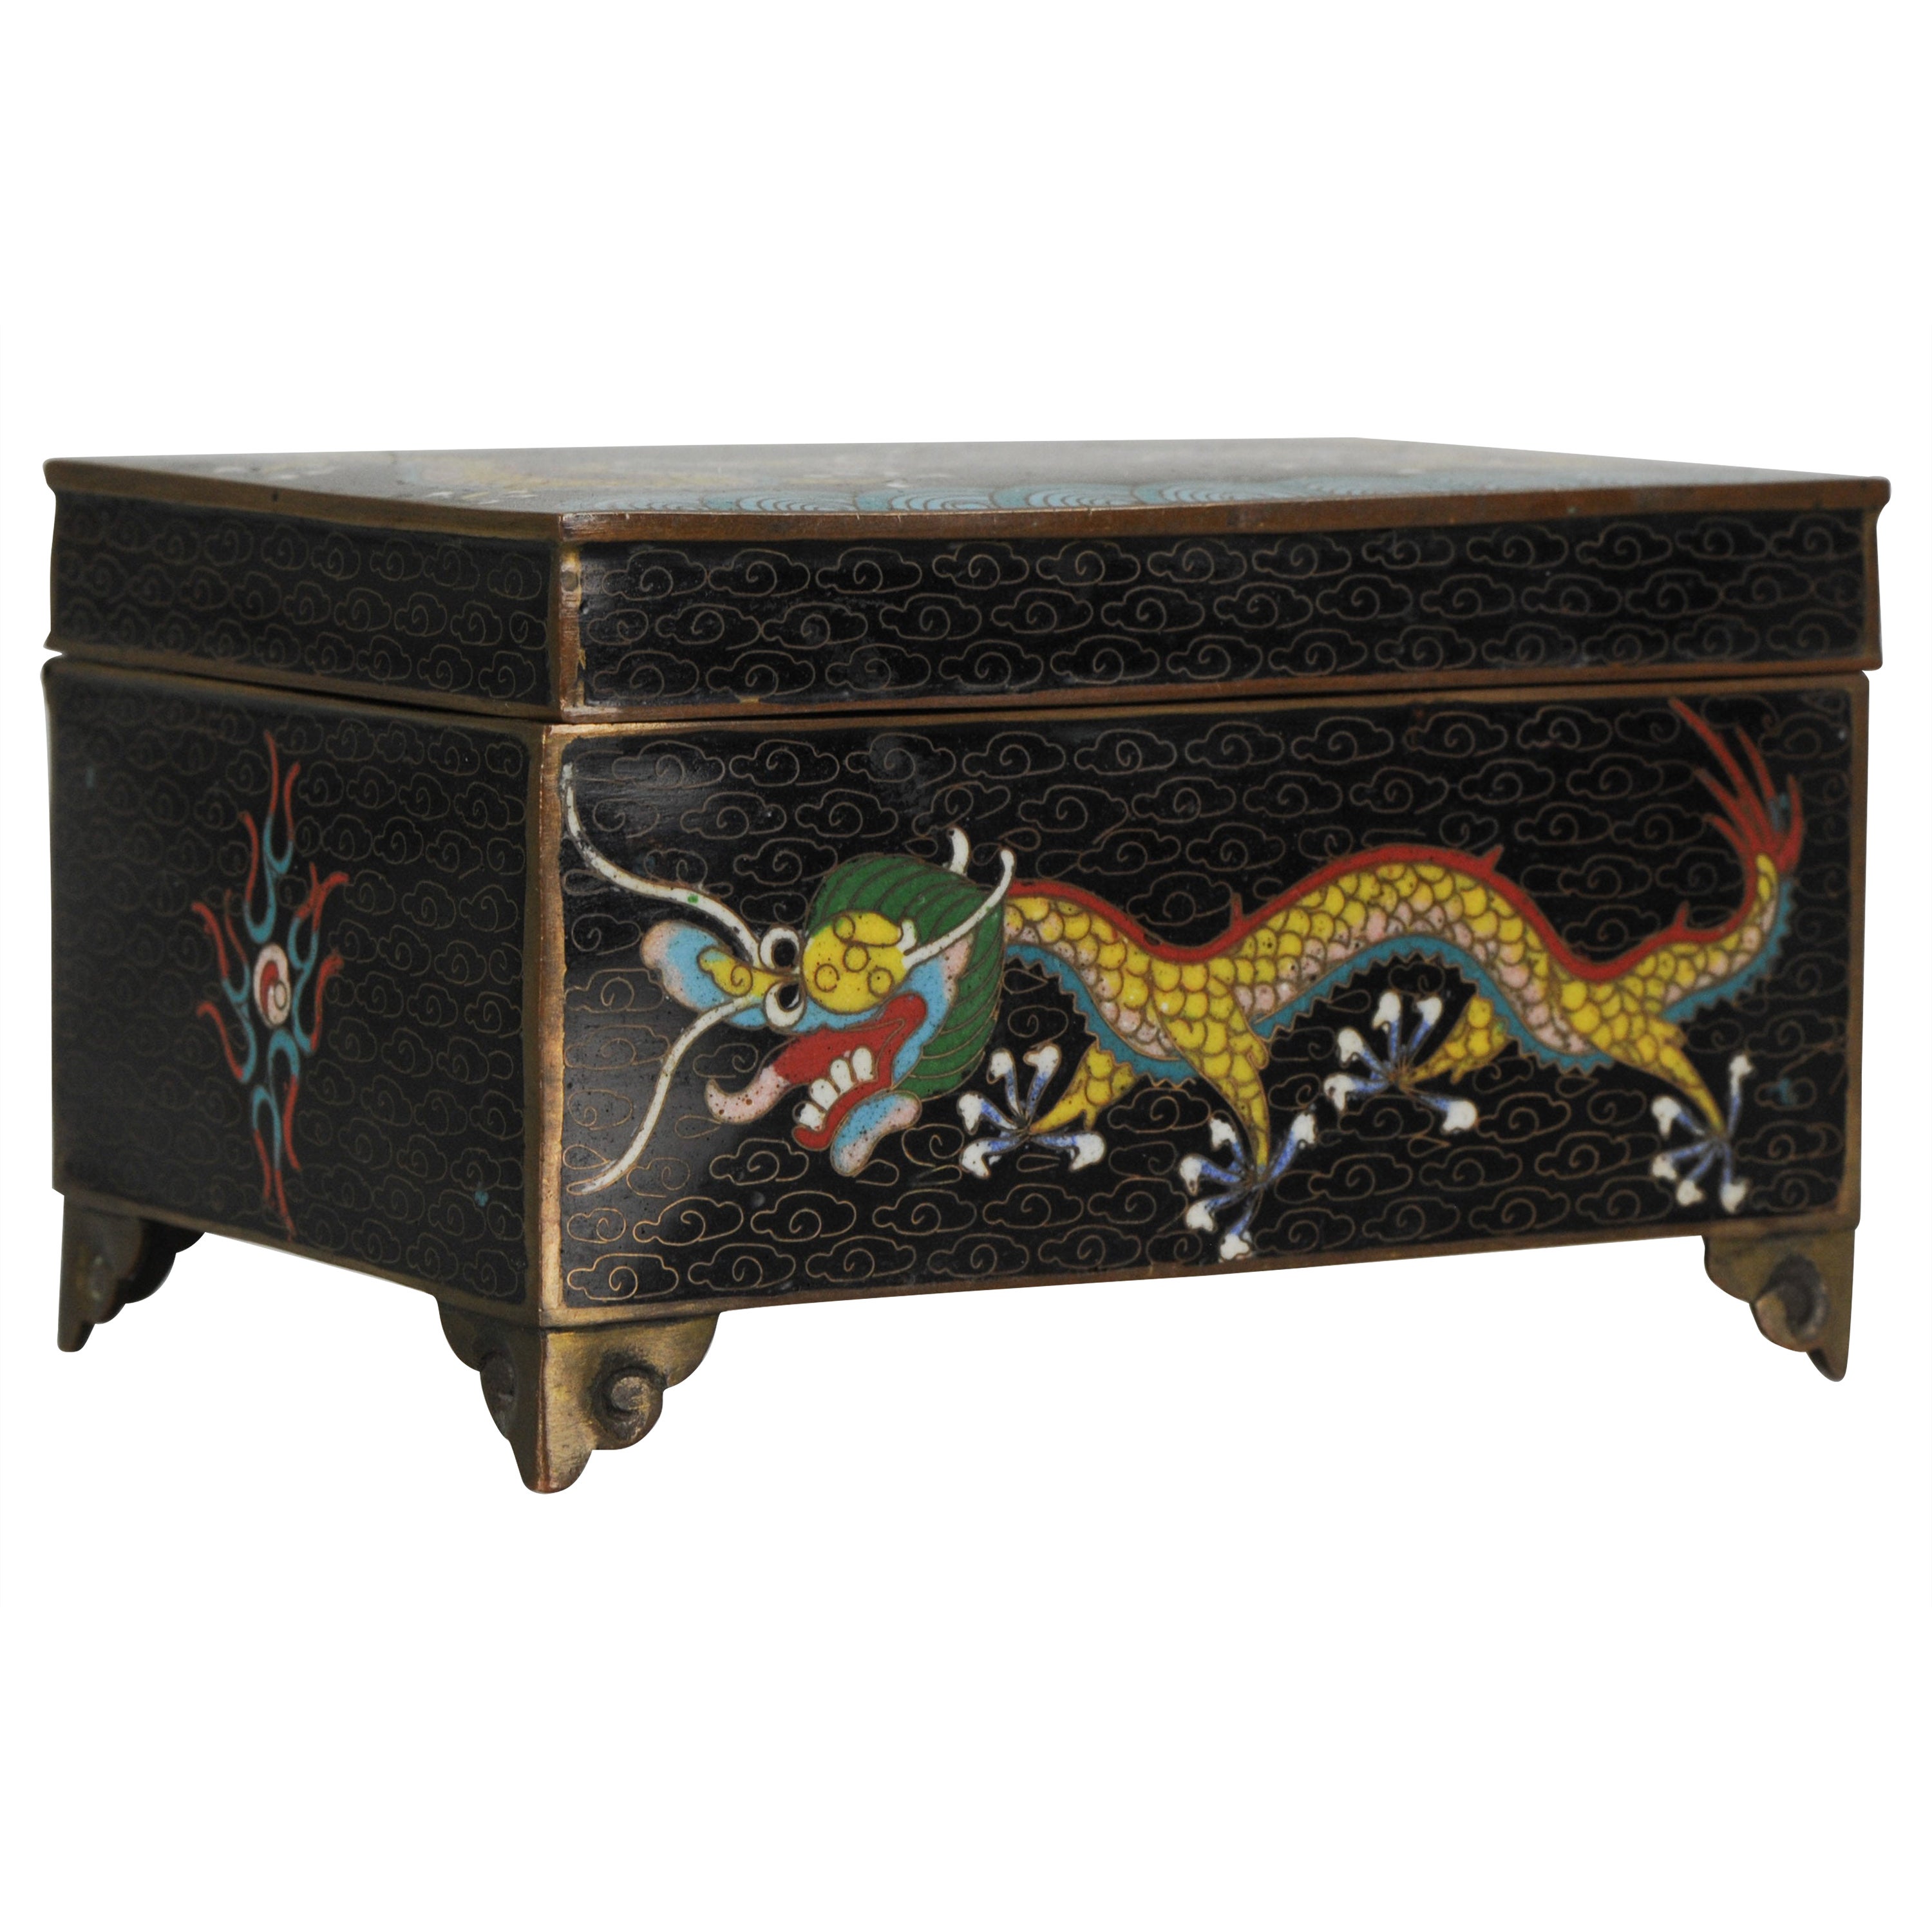 Top Antique Bronze / Copper Cloisonné Dragon Box China, 19th Century